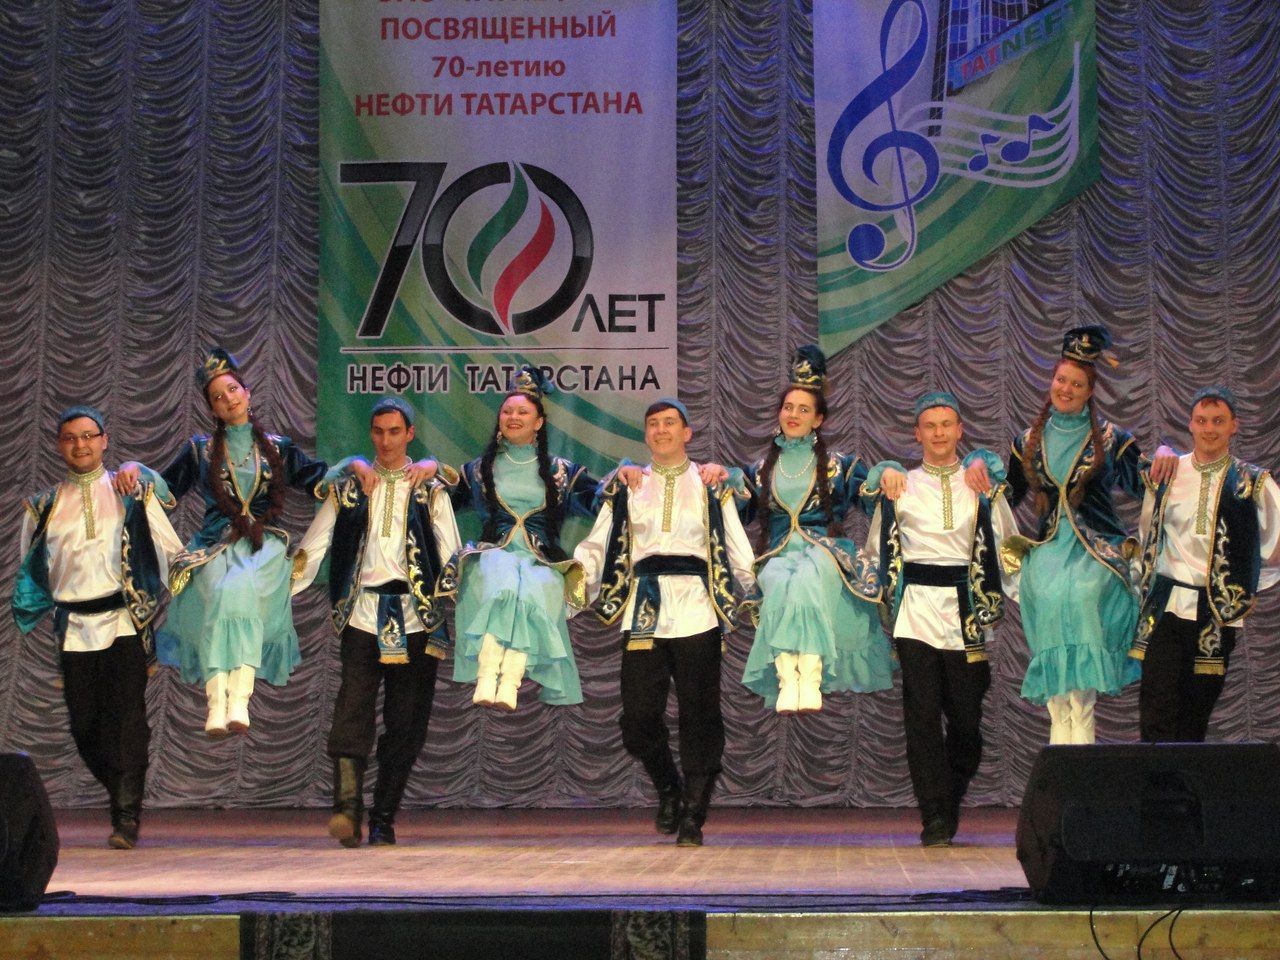 Народный ансамбль танца из Бугульмы на протяжении многих лет радует зрителей своими выступлениями